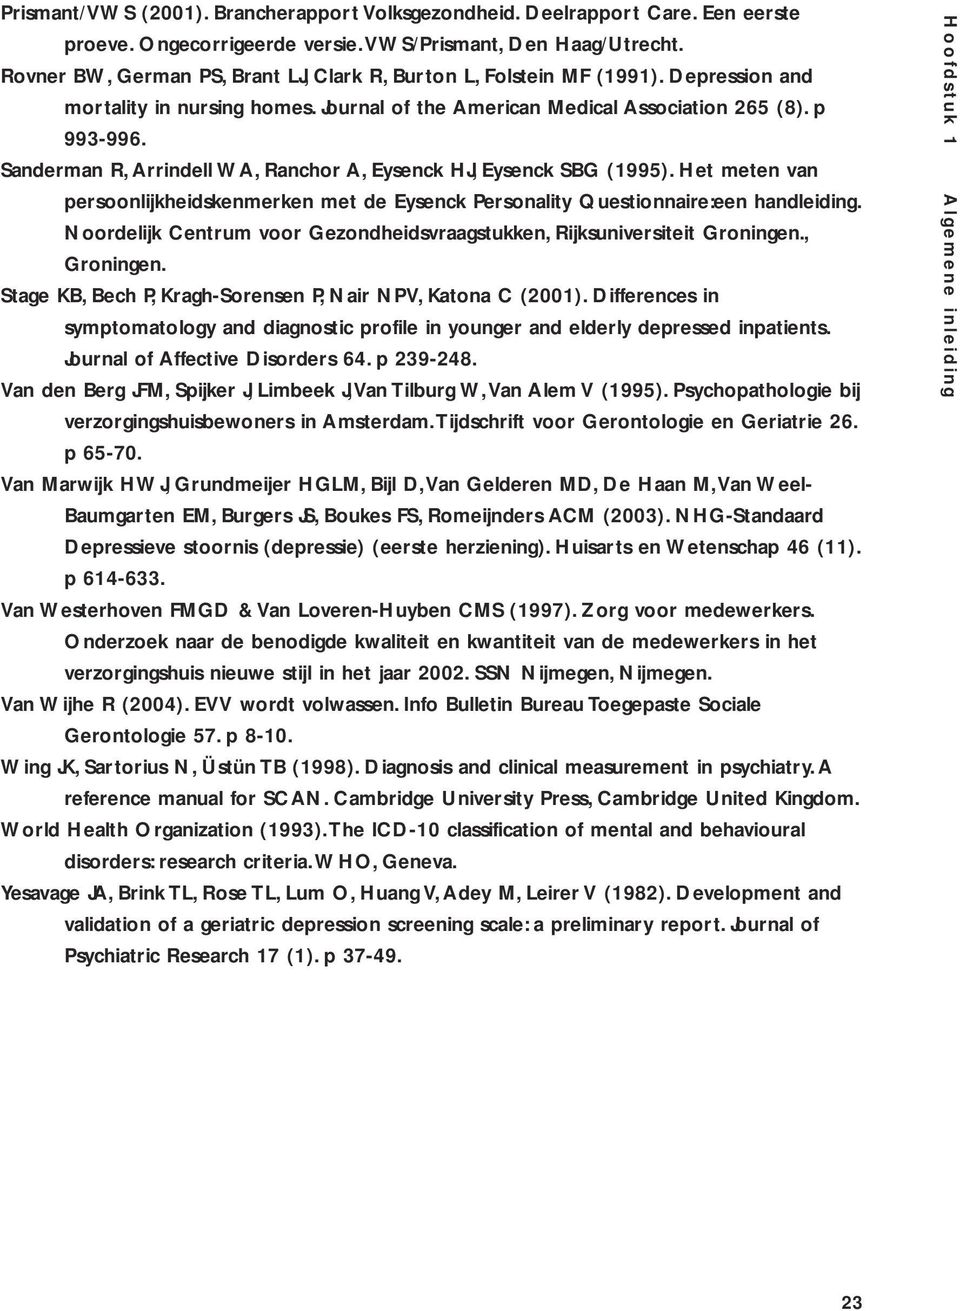 Sanderman R, Arrindell WA, Ranchor A, Eysenck HJ, Eysenck SBG (1995). Het meten van persoonlijkheidskenmerken met de Eysenck Personality Questionnaire:een handleiding.